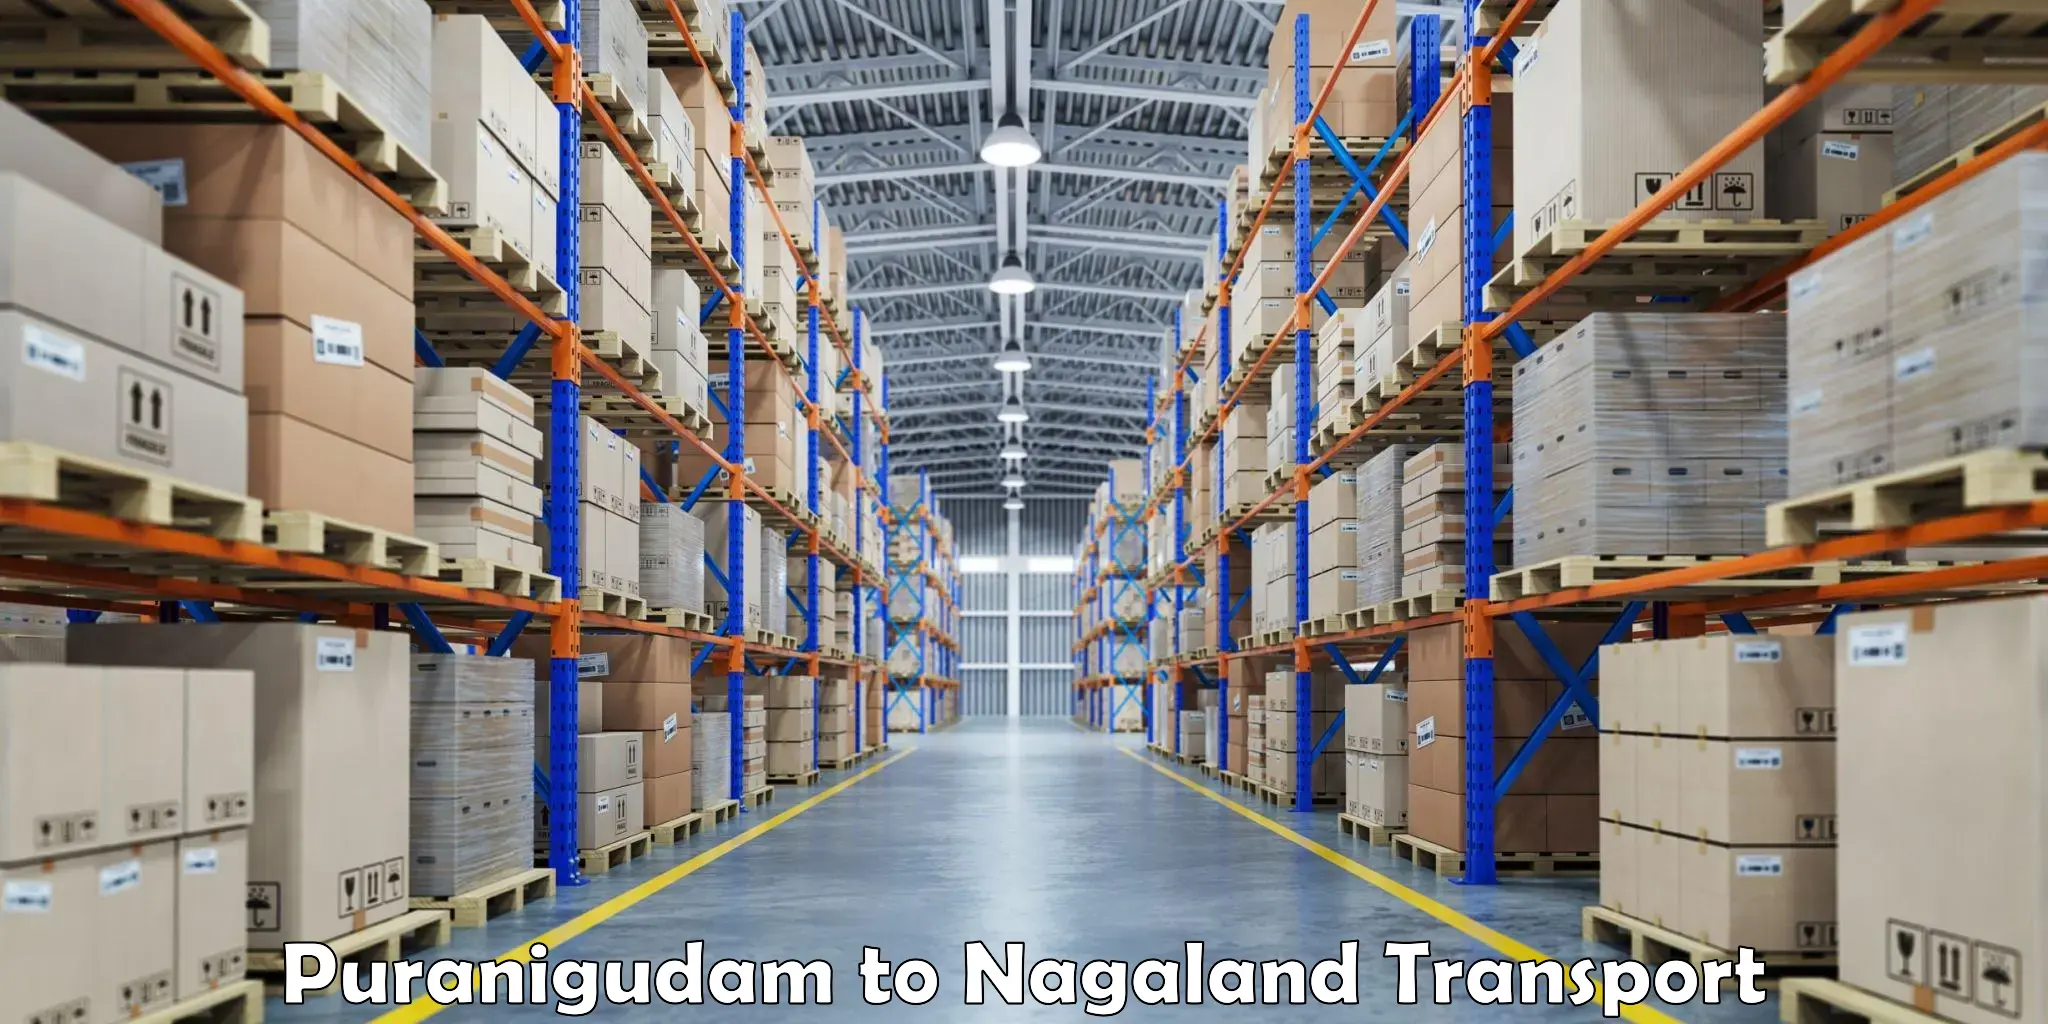 Two wheeler parcel service Puranigudam to NIT Nagaland